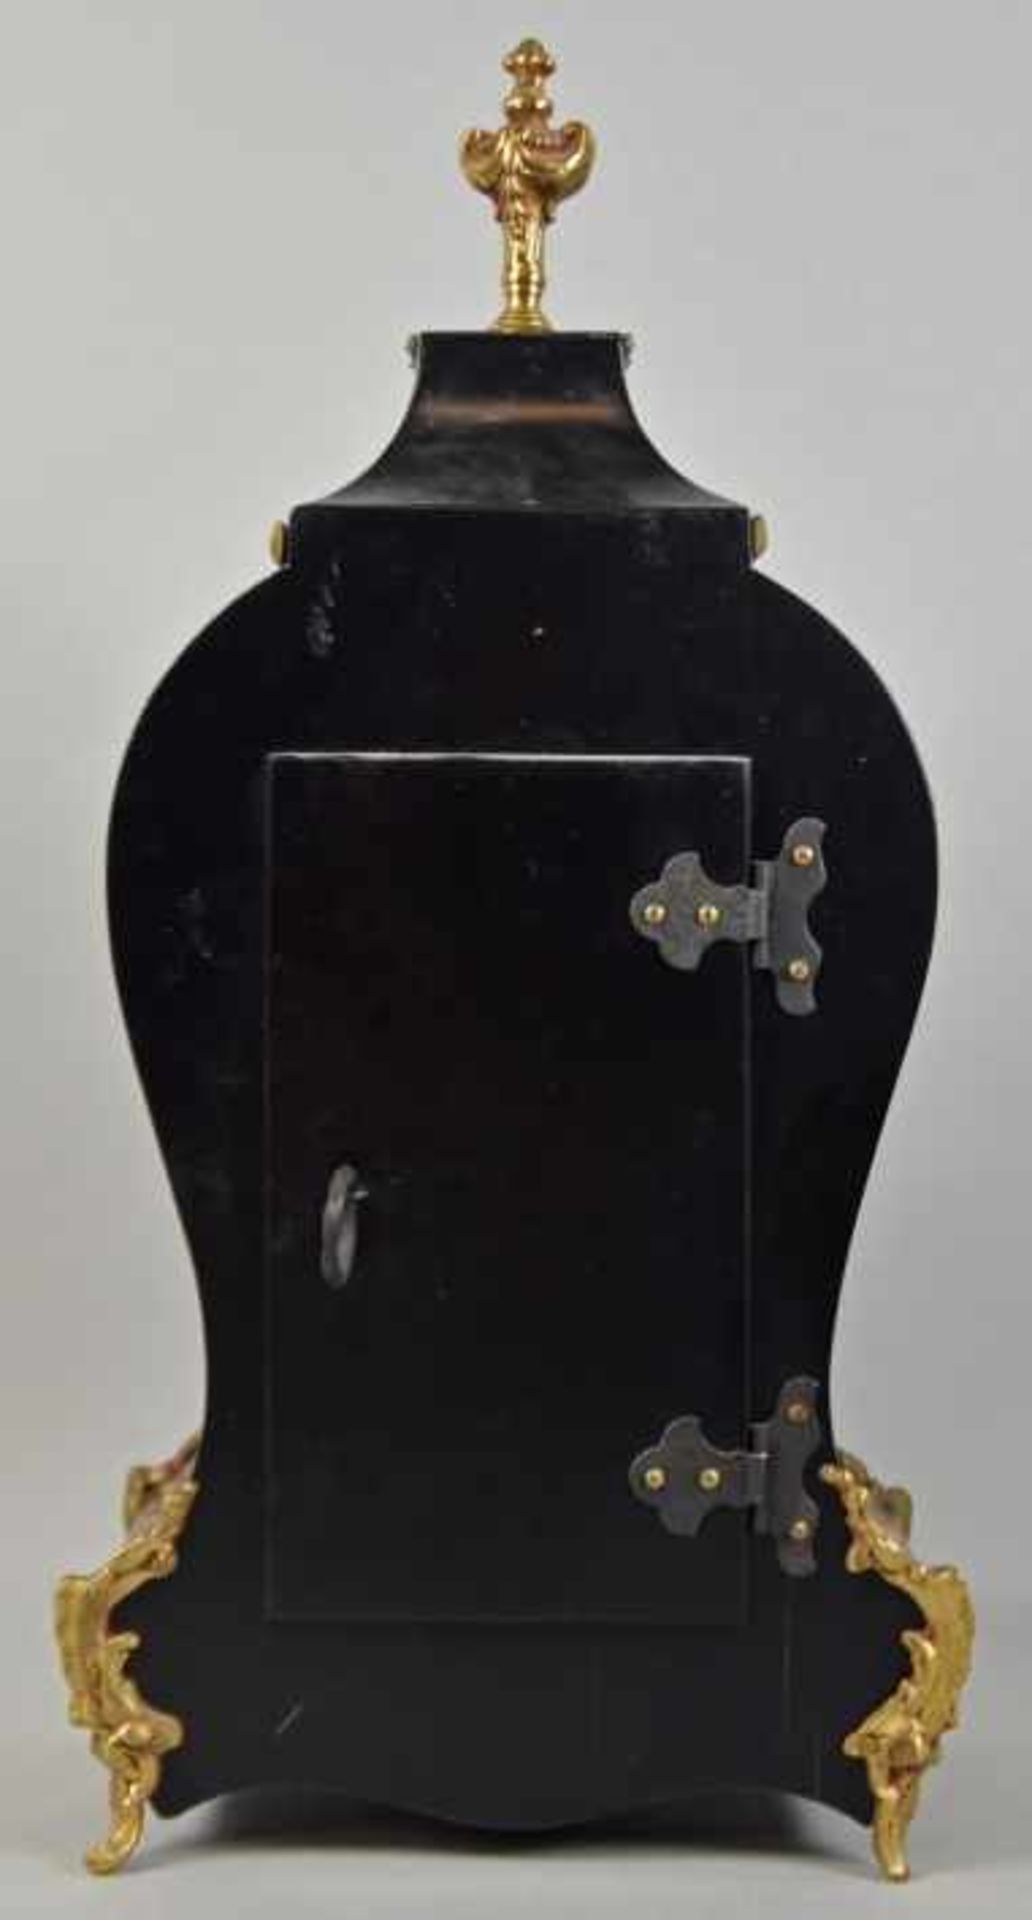 BOULLE-TISCHUHR geschwungene Pendule mit Holzgehäuse in Bloulletechnik mit dekorativen - Bild 3 aus 5